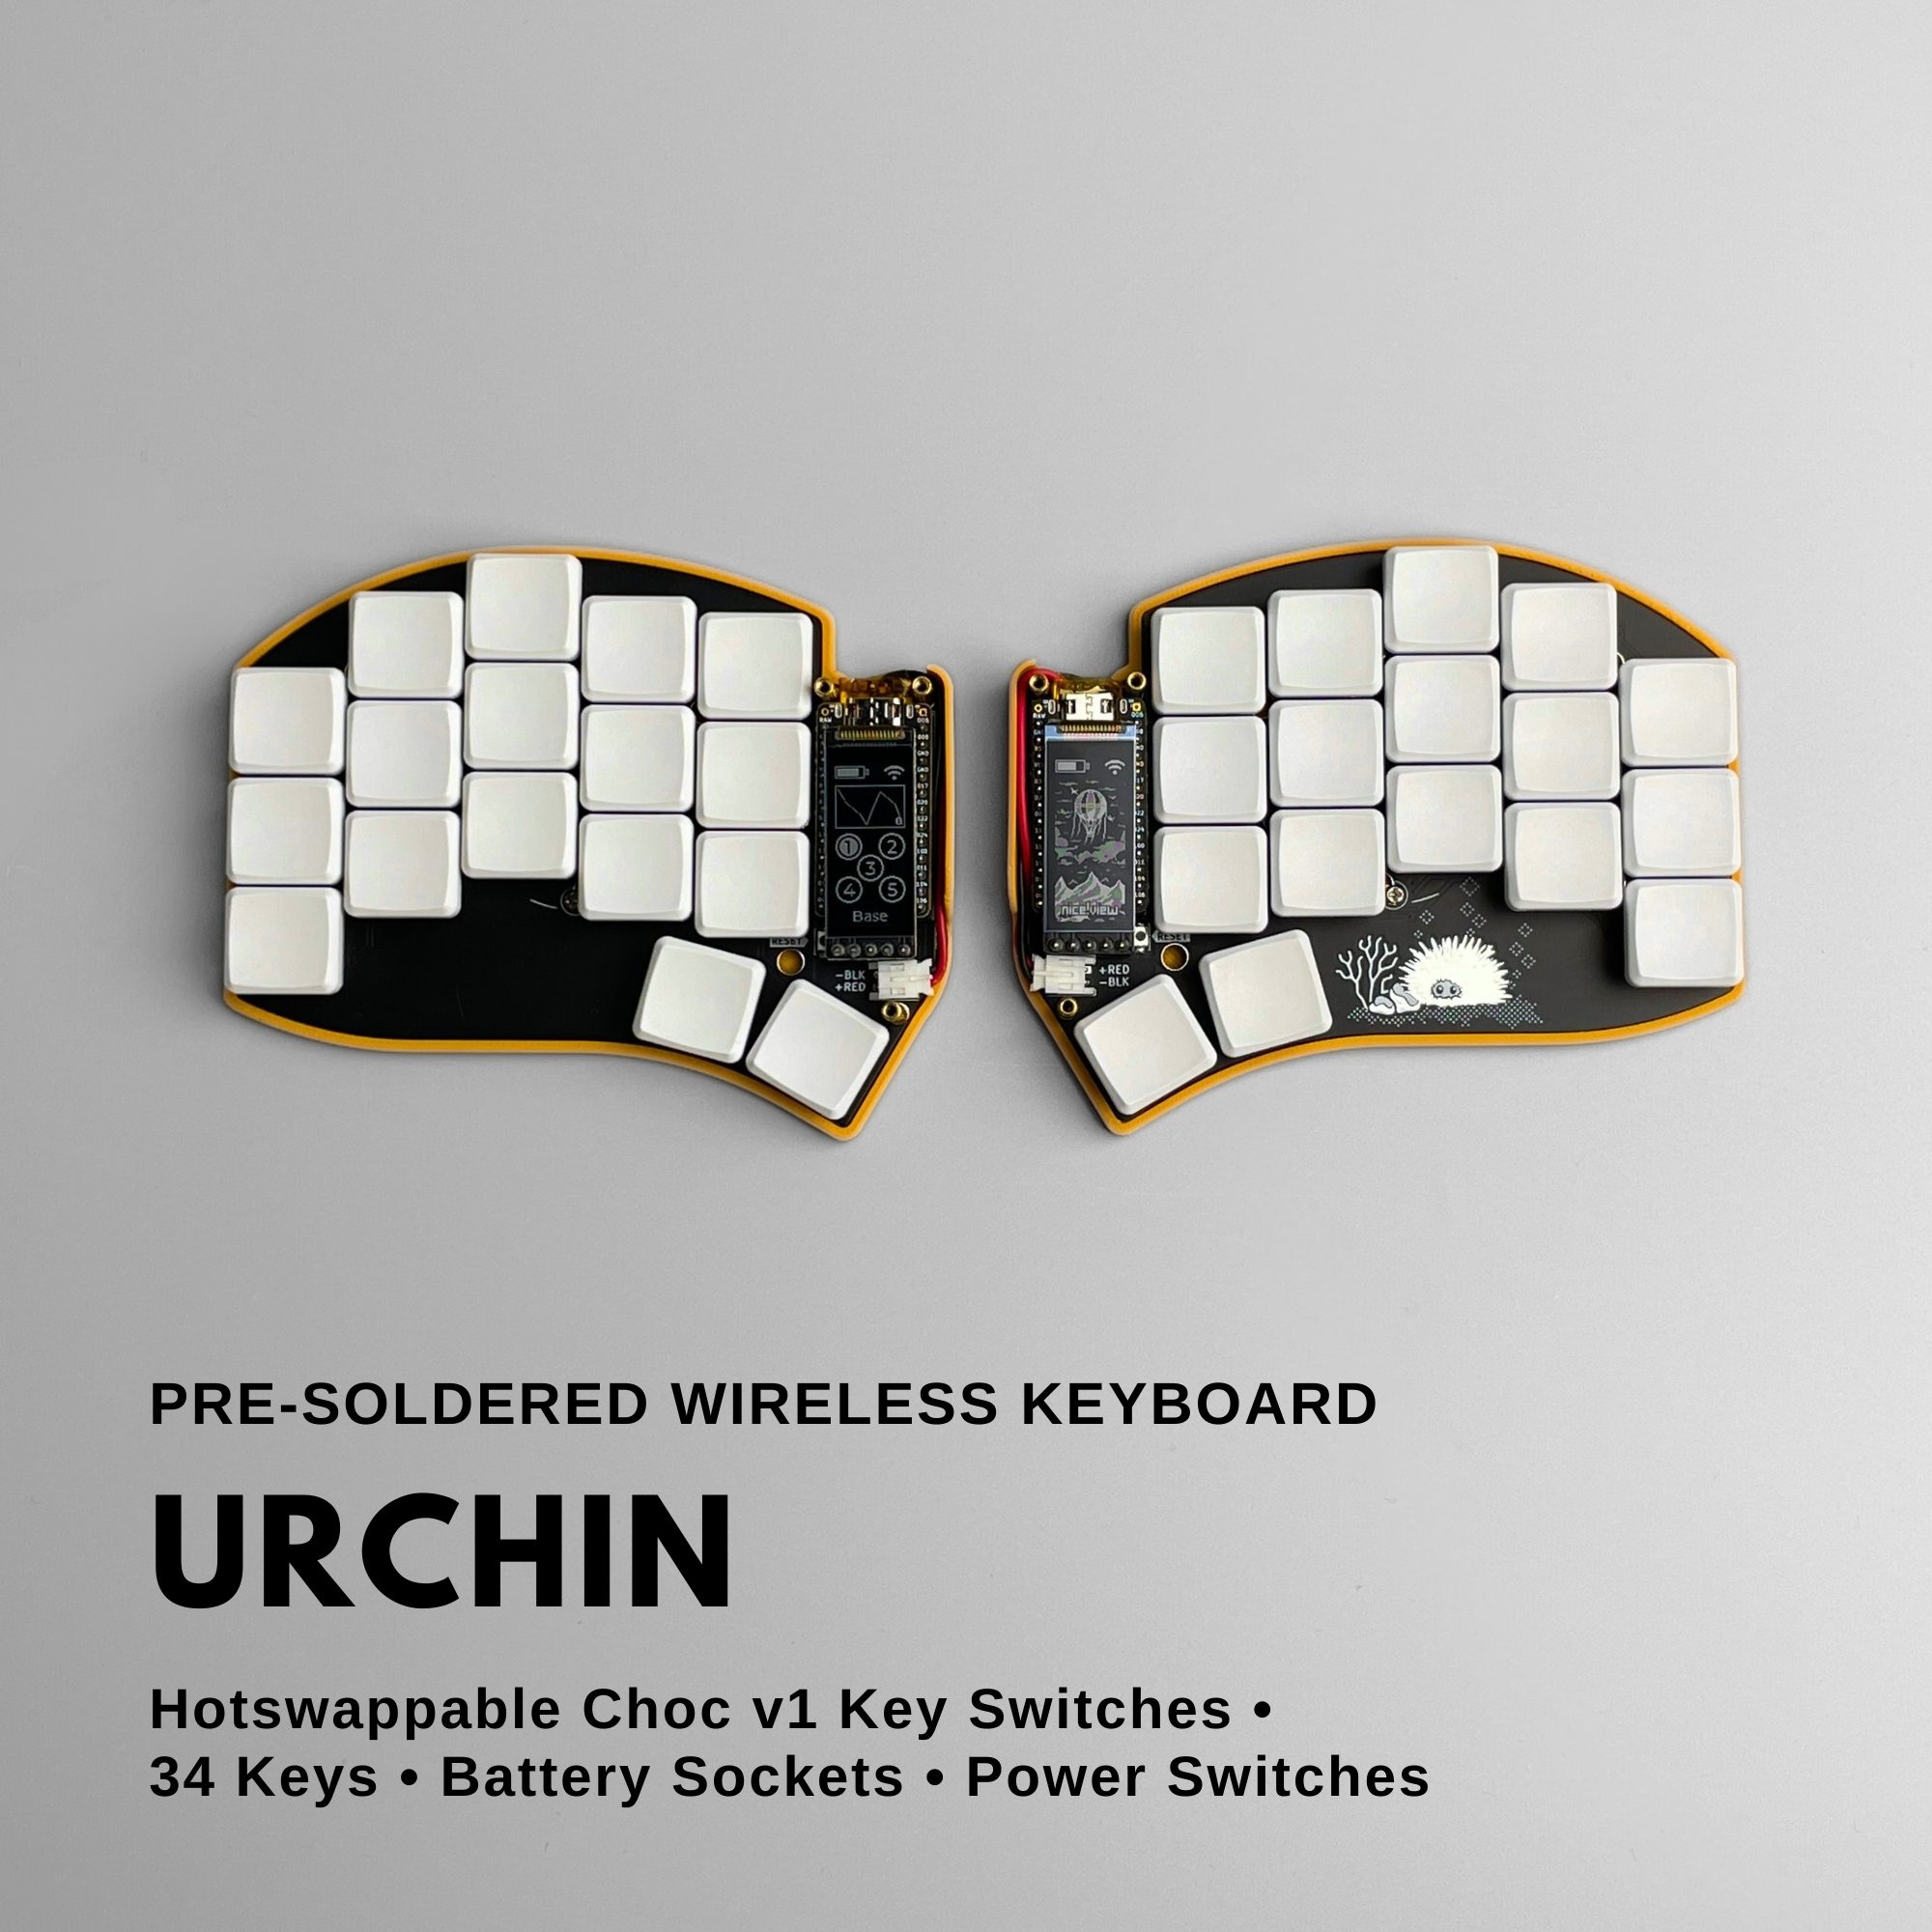 Pre-soldered Urchin wireless split keyboard designed by duckyb